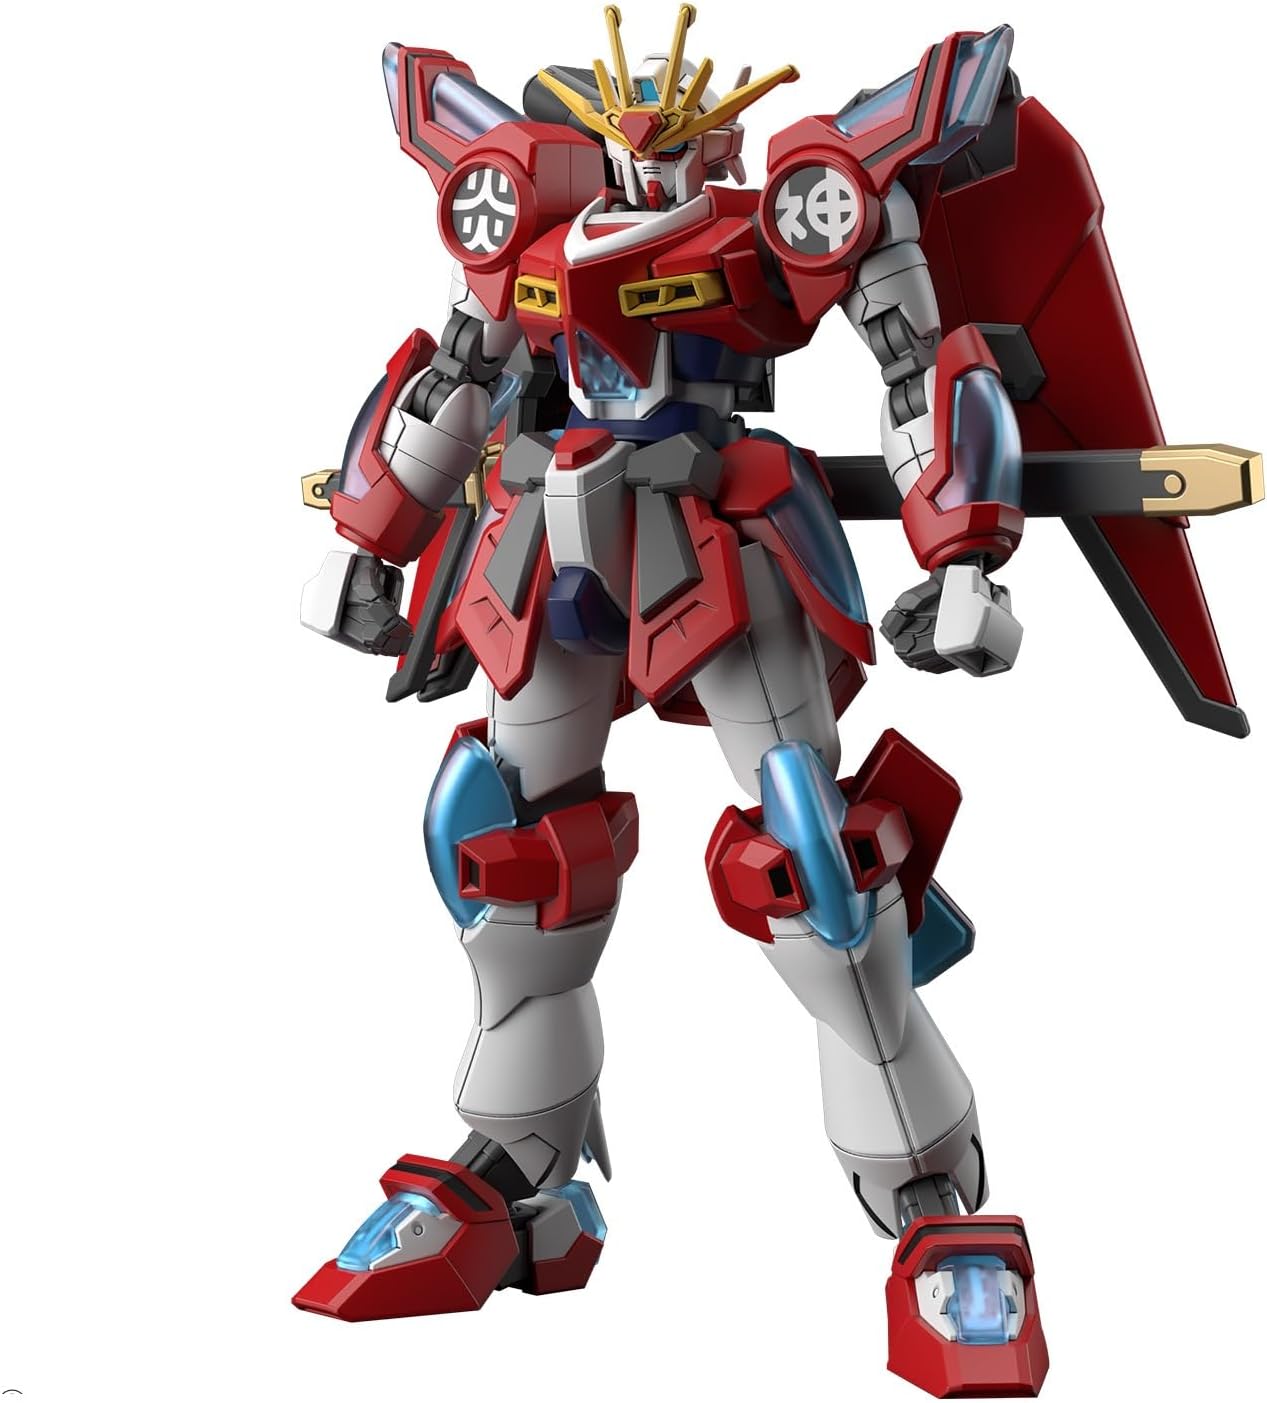 Bandai: Shin Burning Gundam HG 1/144 Gundam Build Metaverse